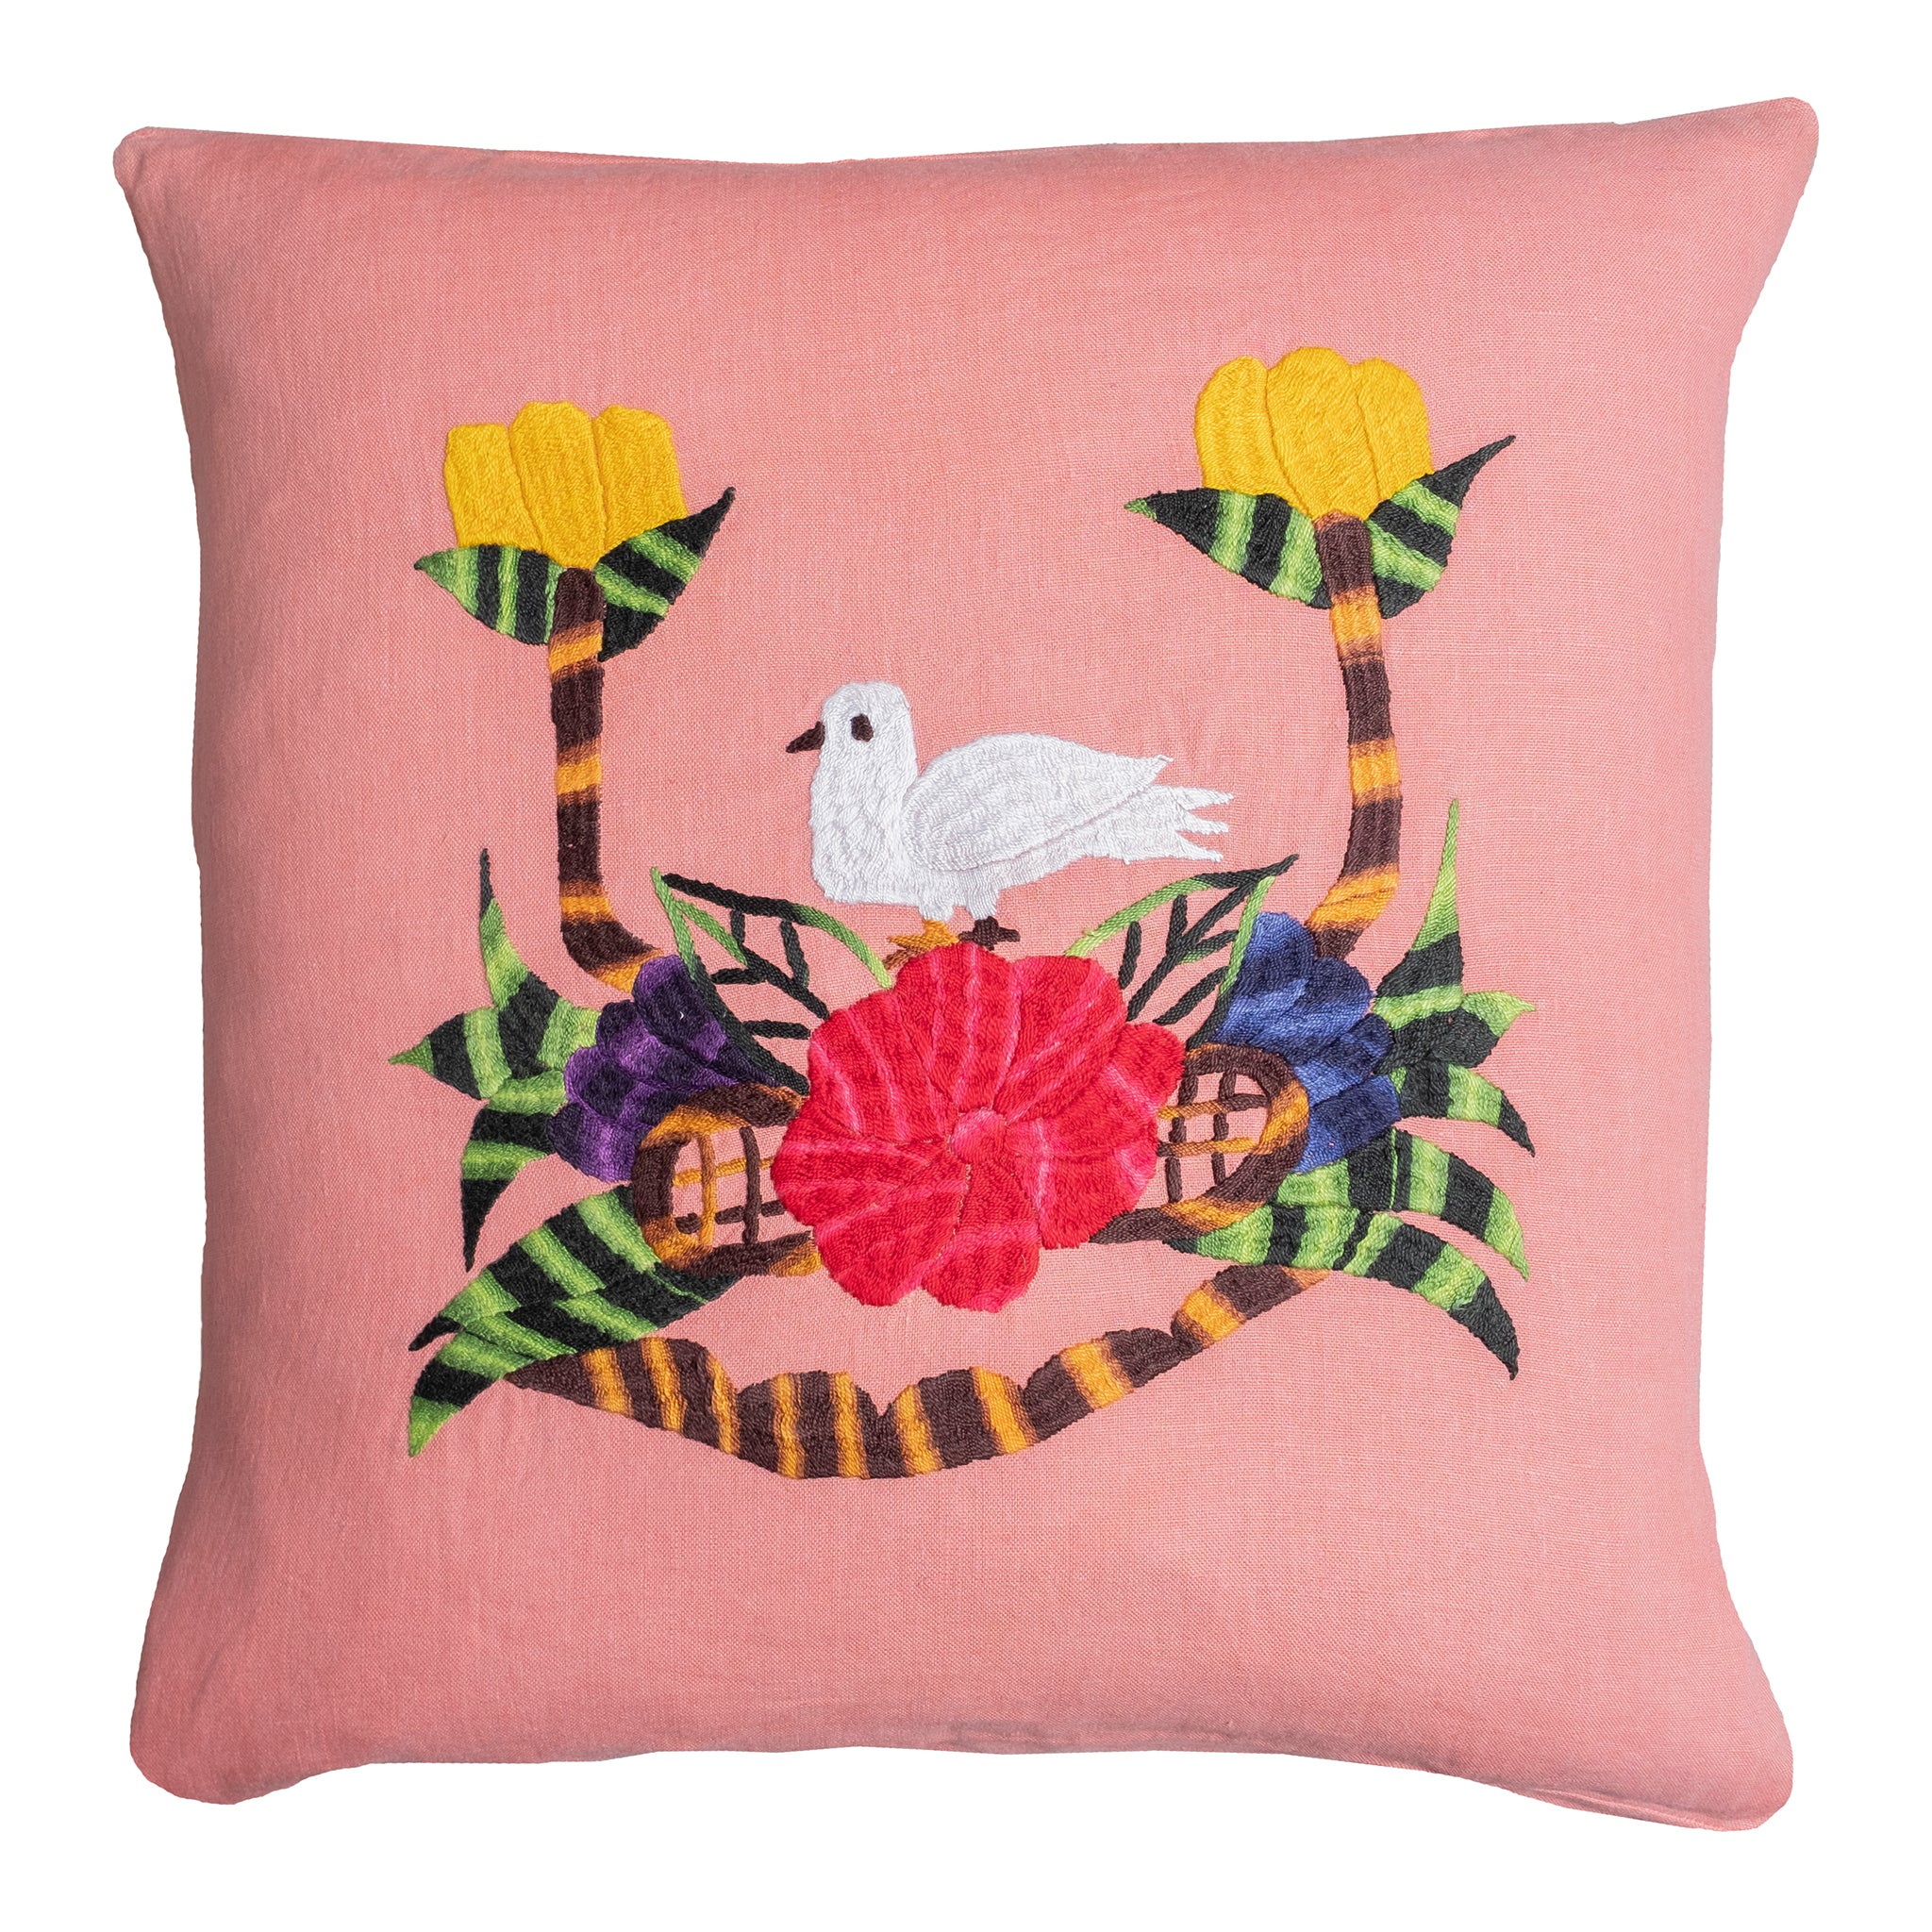 Sale! Bird pillow on pink linen